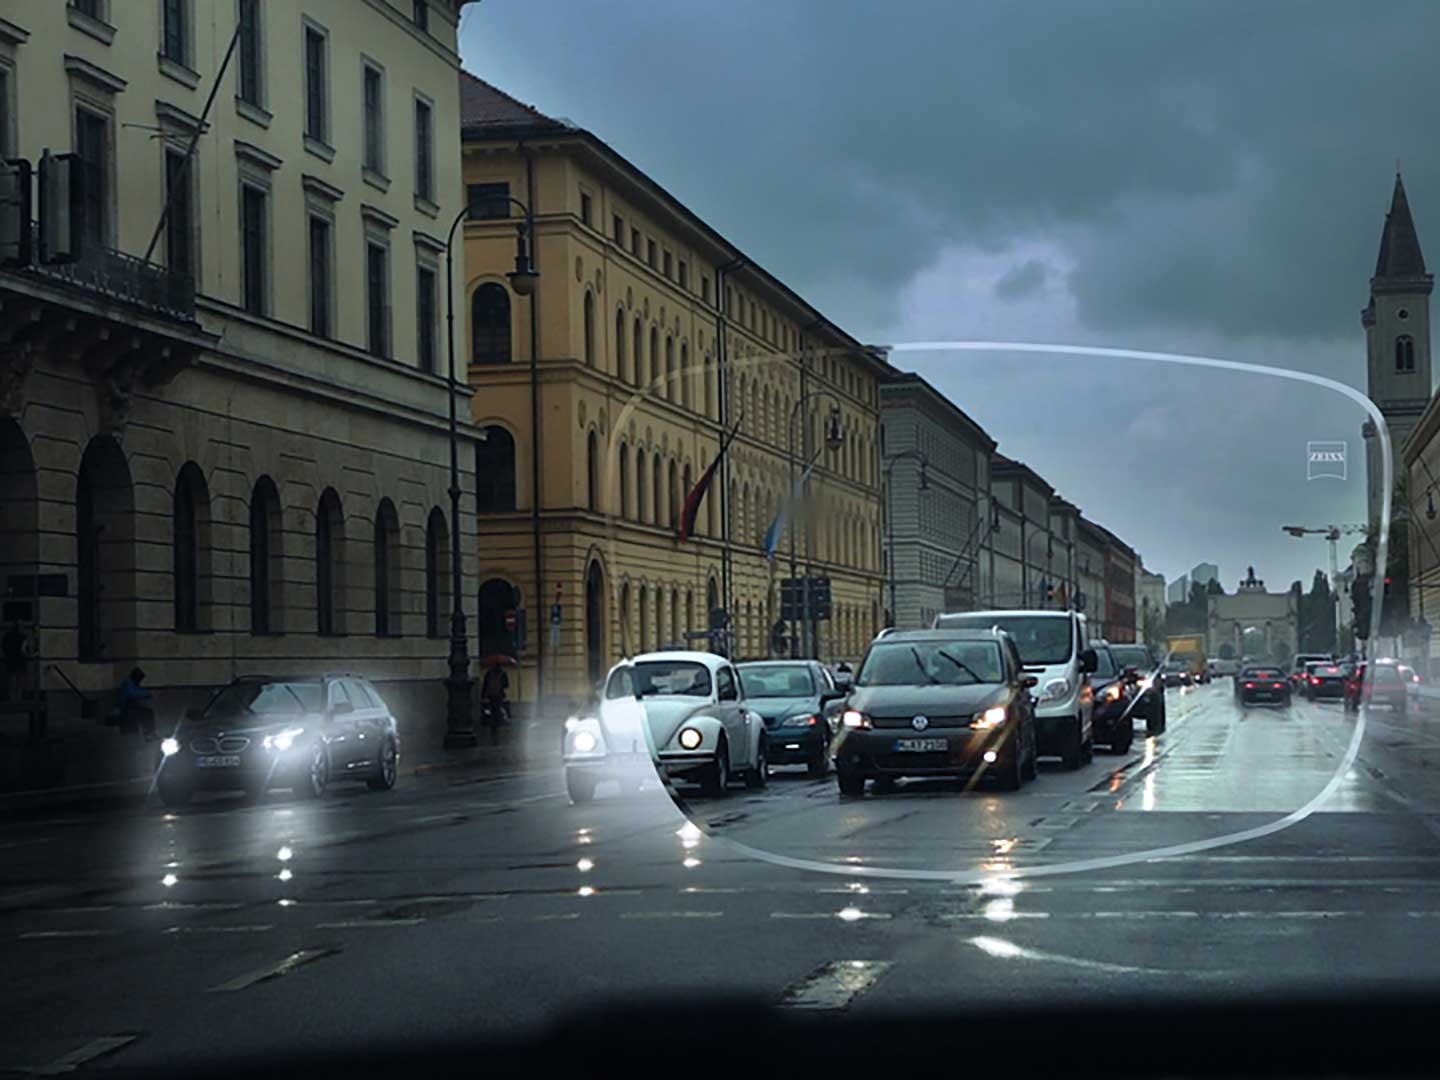 De afbeelding toont slecht zicht bij weinig licht op straat. Het zichtpunt is vanuit het interieur van een auto, gezien door een brillenglas. 